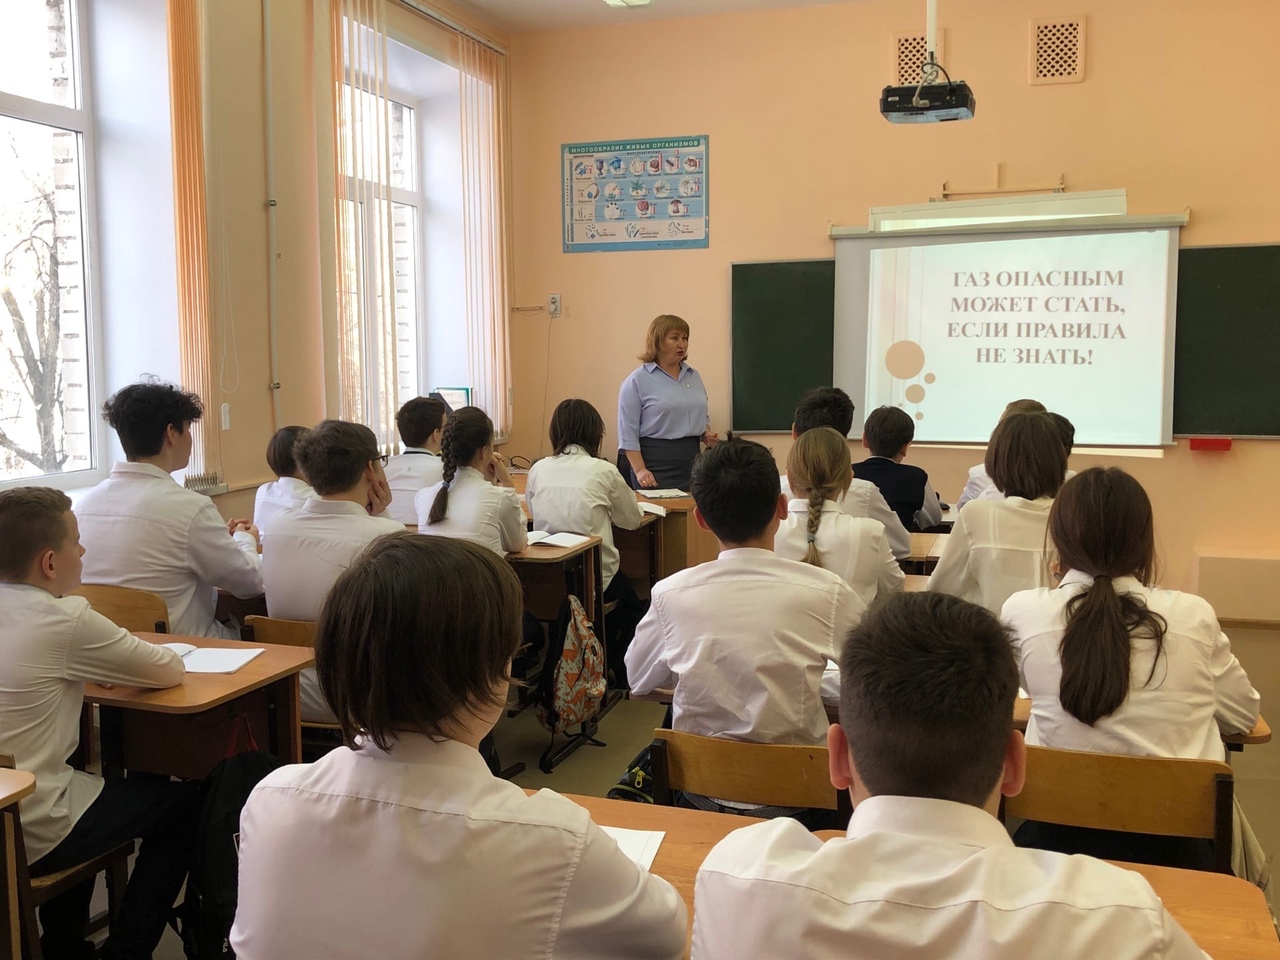 В Красноглинском районе Самары школьникам рассказали, как пользоваться газом